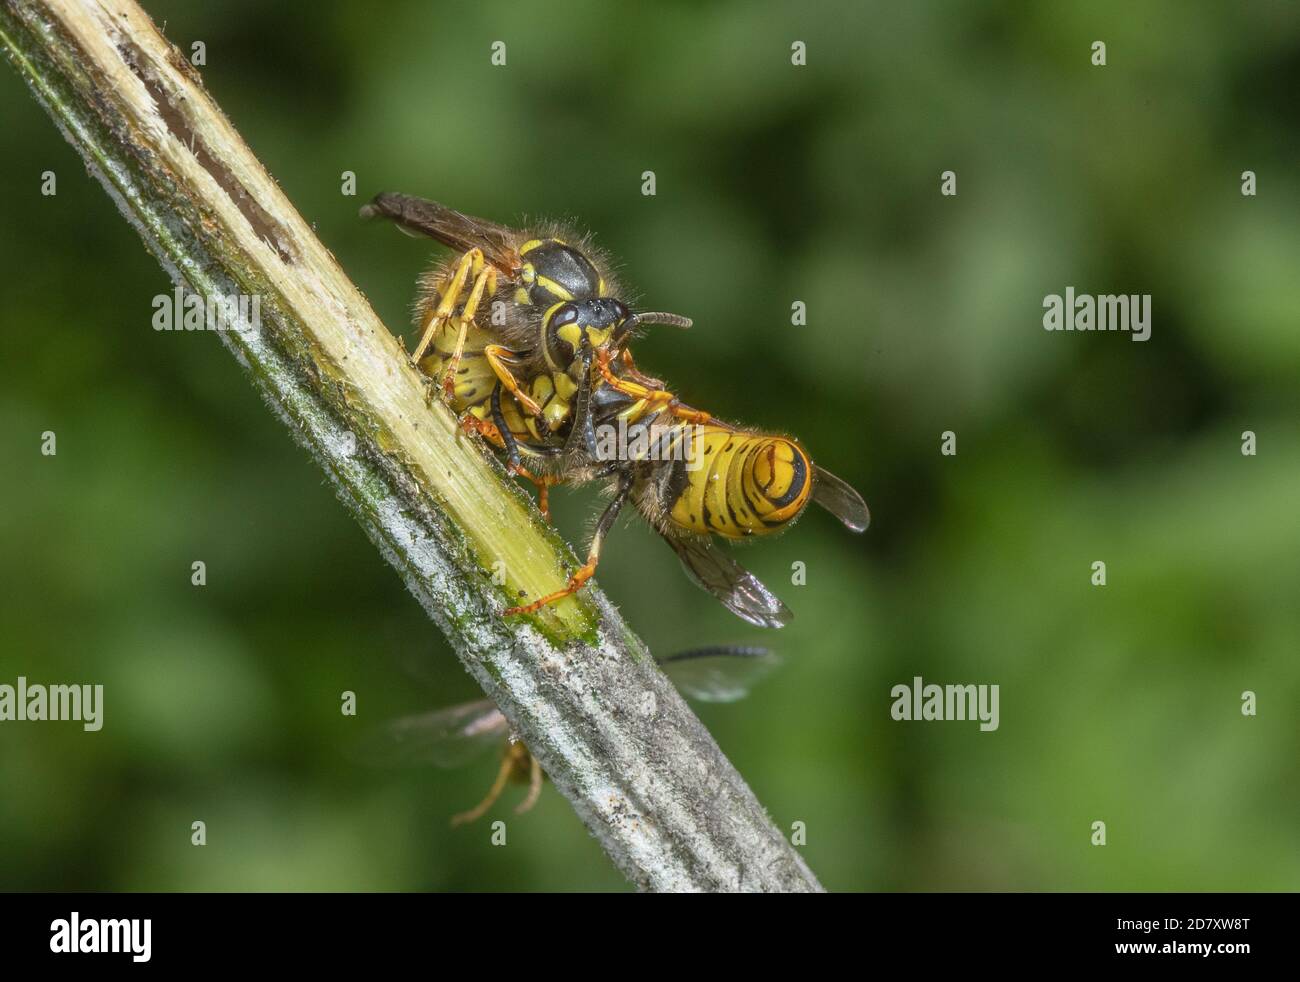 Groupe de Wasps allemands, Vespula germanica, interagissant au niveau de la sève sucrée de la plaie, sur la tige de Hogweed. Les niveaux de Somerset. Banque D'Images